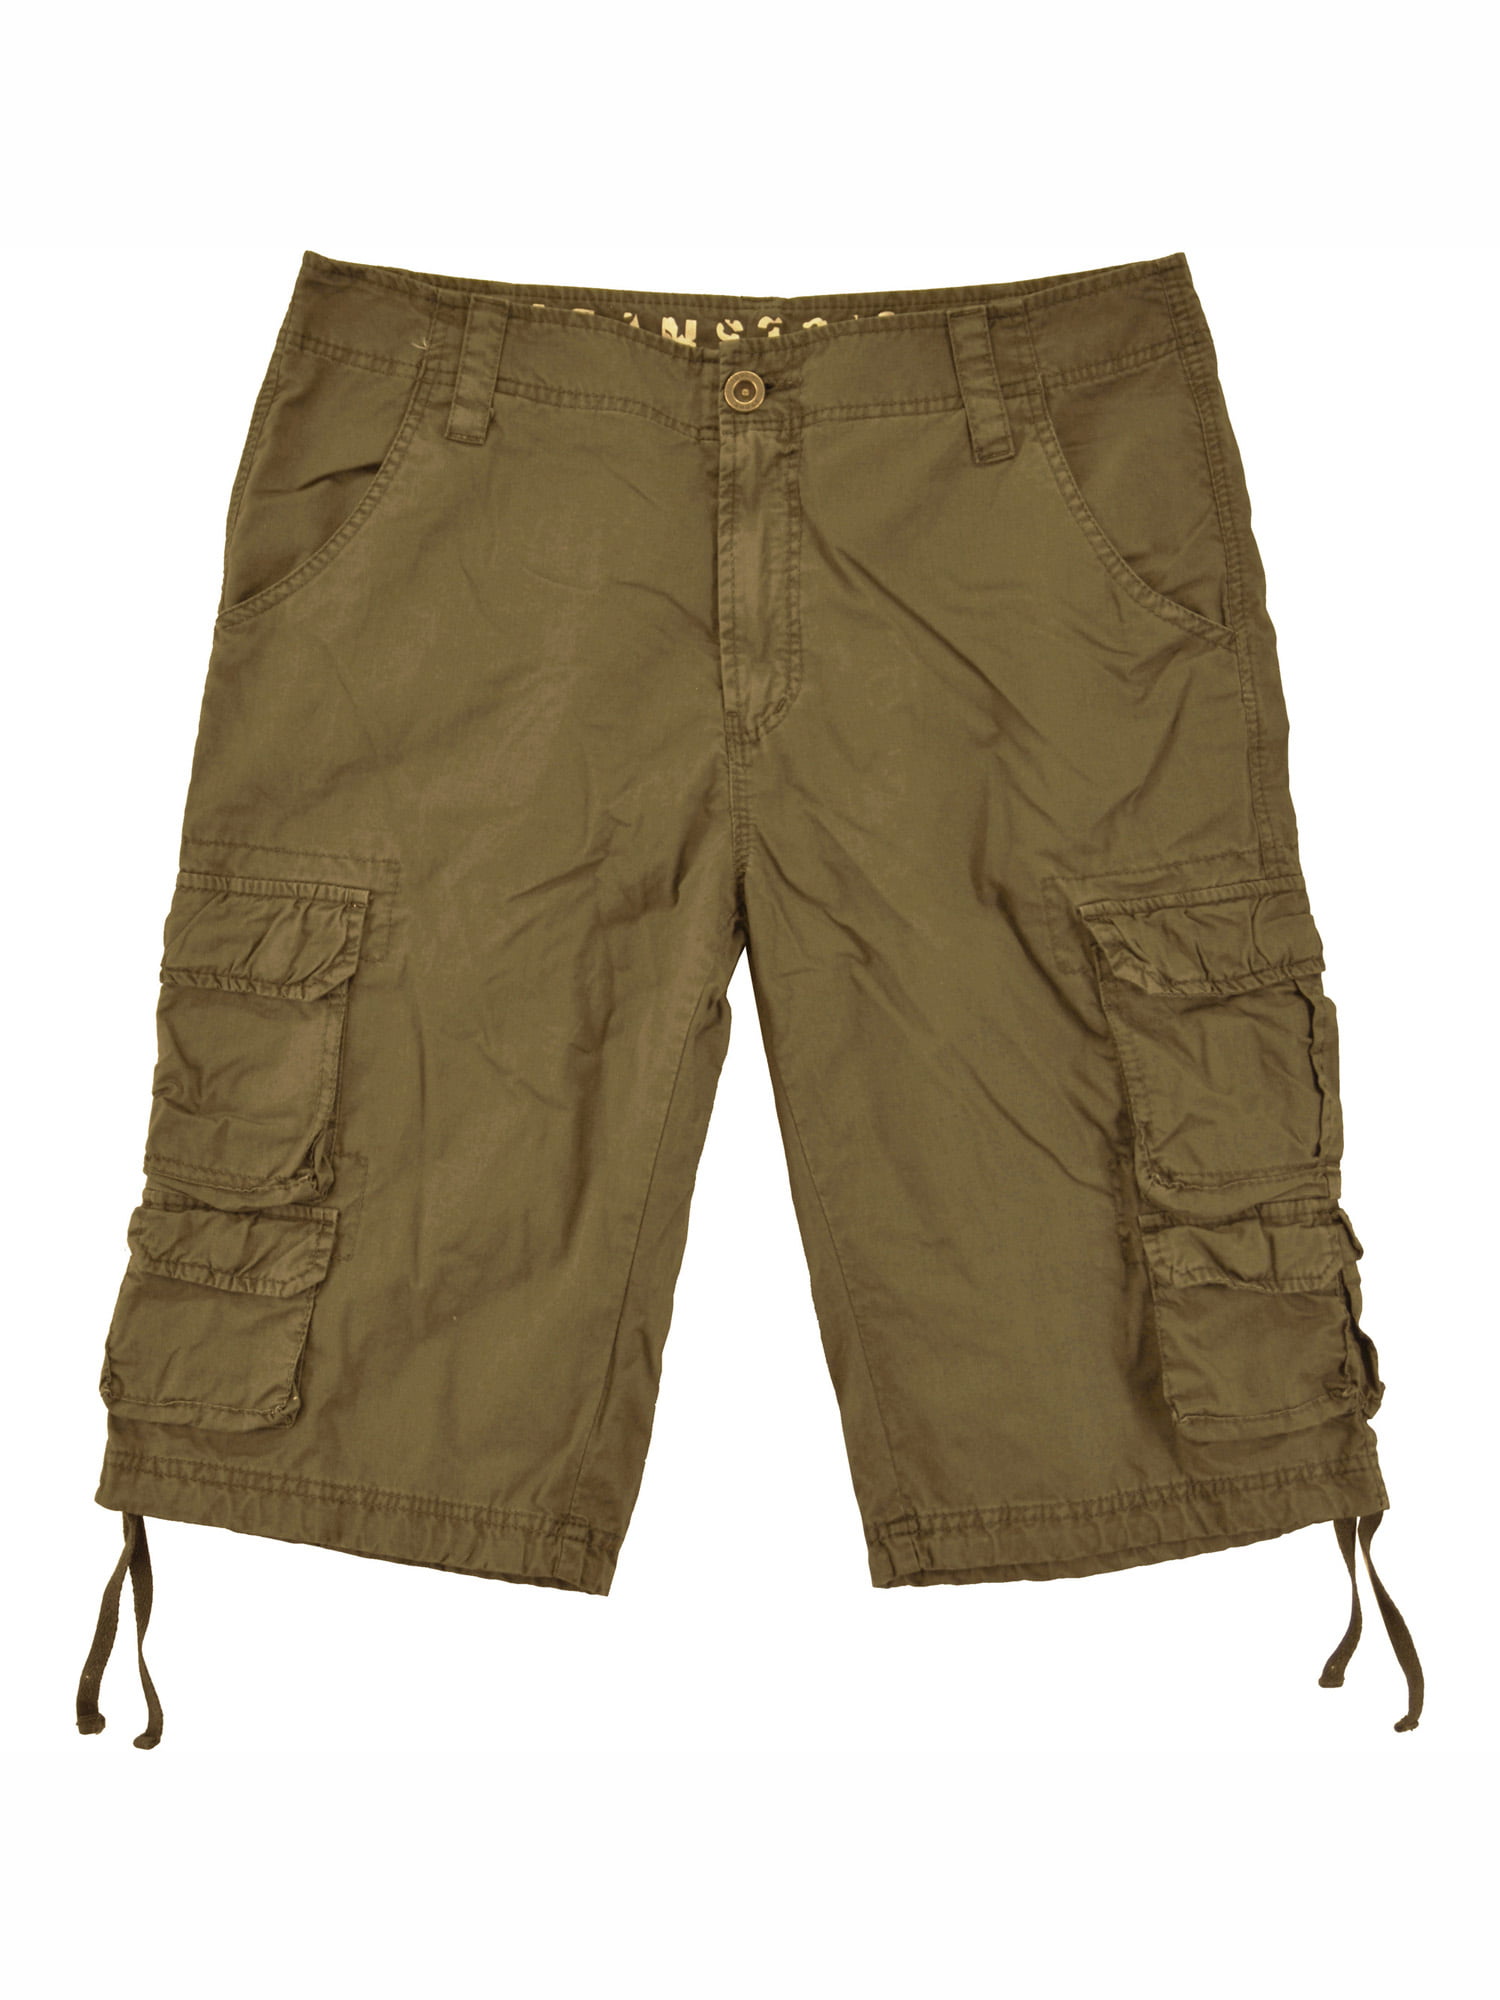 Men's G & M Cargo Khaki Shorts in Sz 38  $14.94 